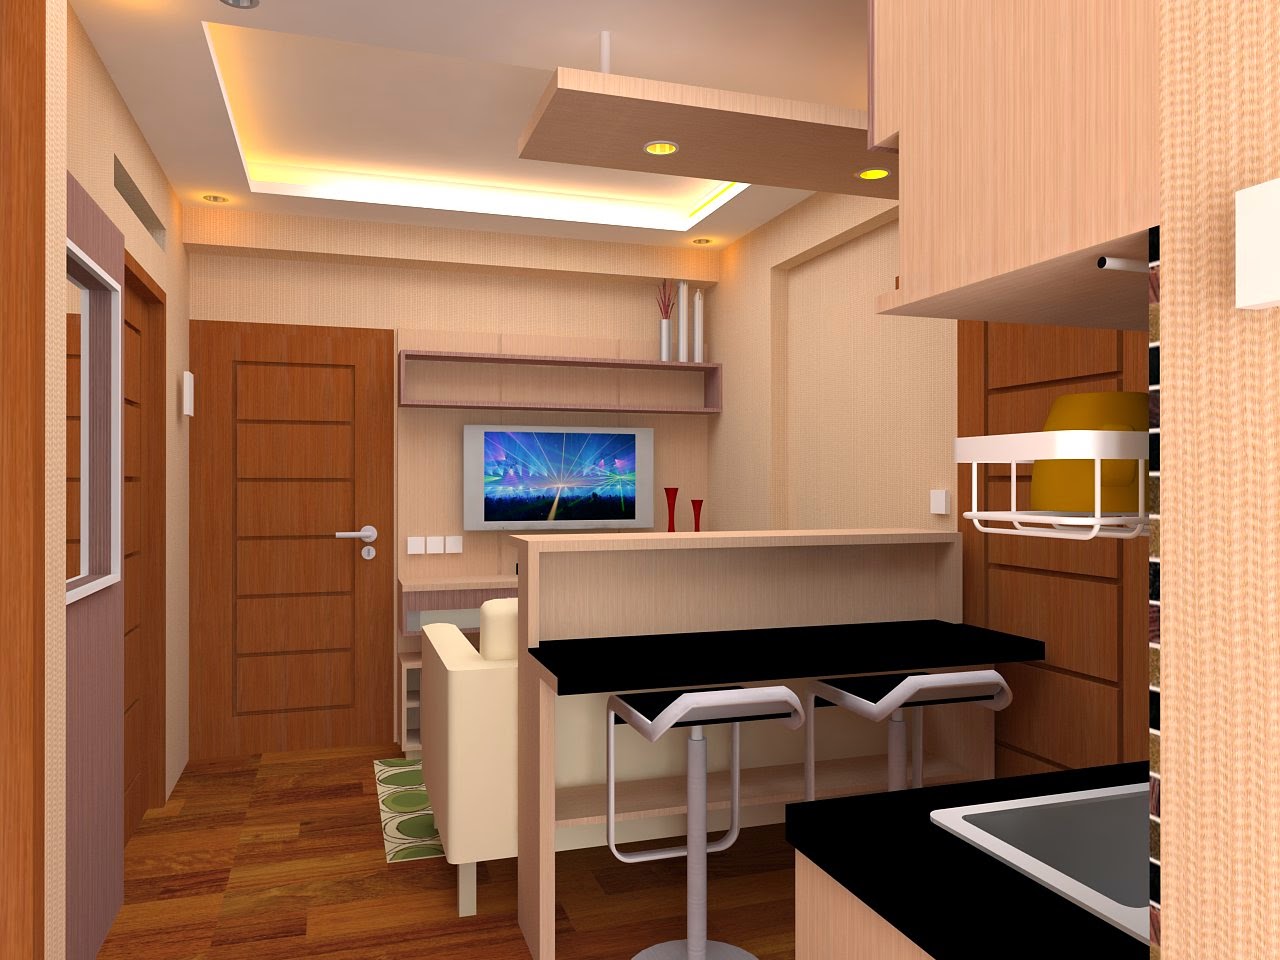  Desain Apartemen Tipe 36  Gambar Desain  Rumah Minimalis